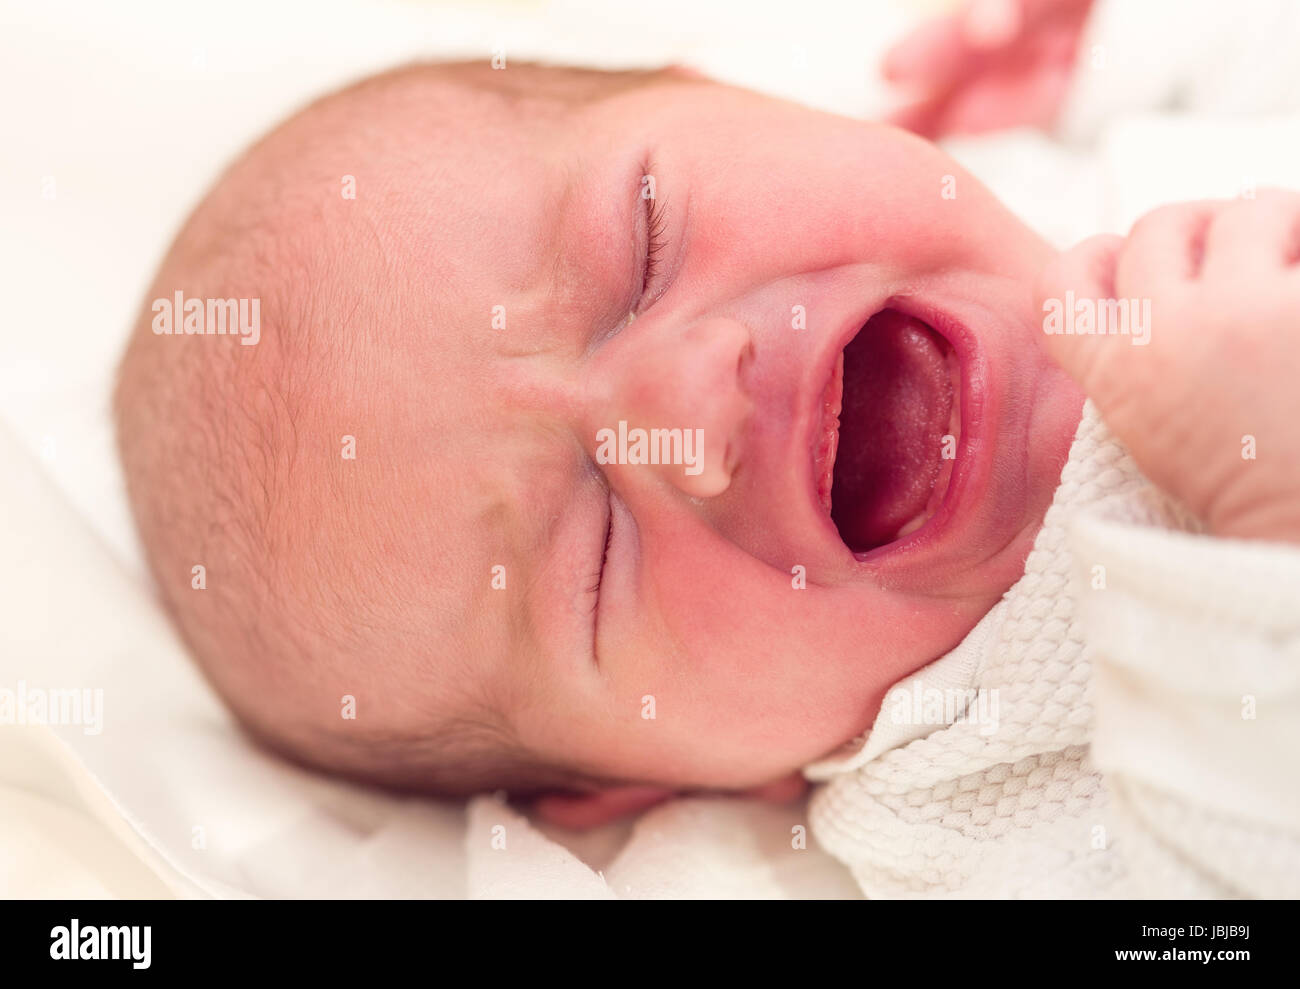 Il pianto neonato in ospedale - le prime ore della vita nuova Foto Stock